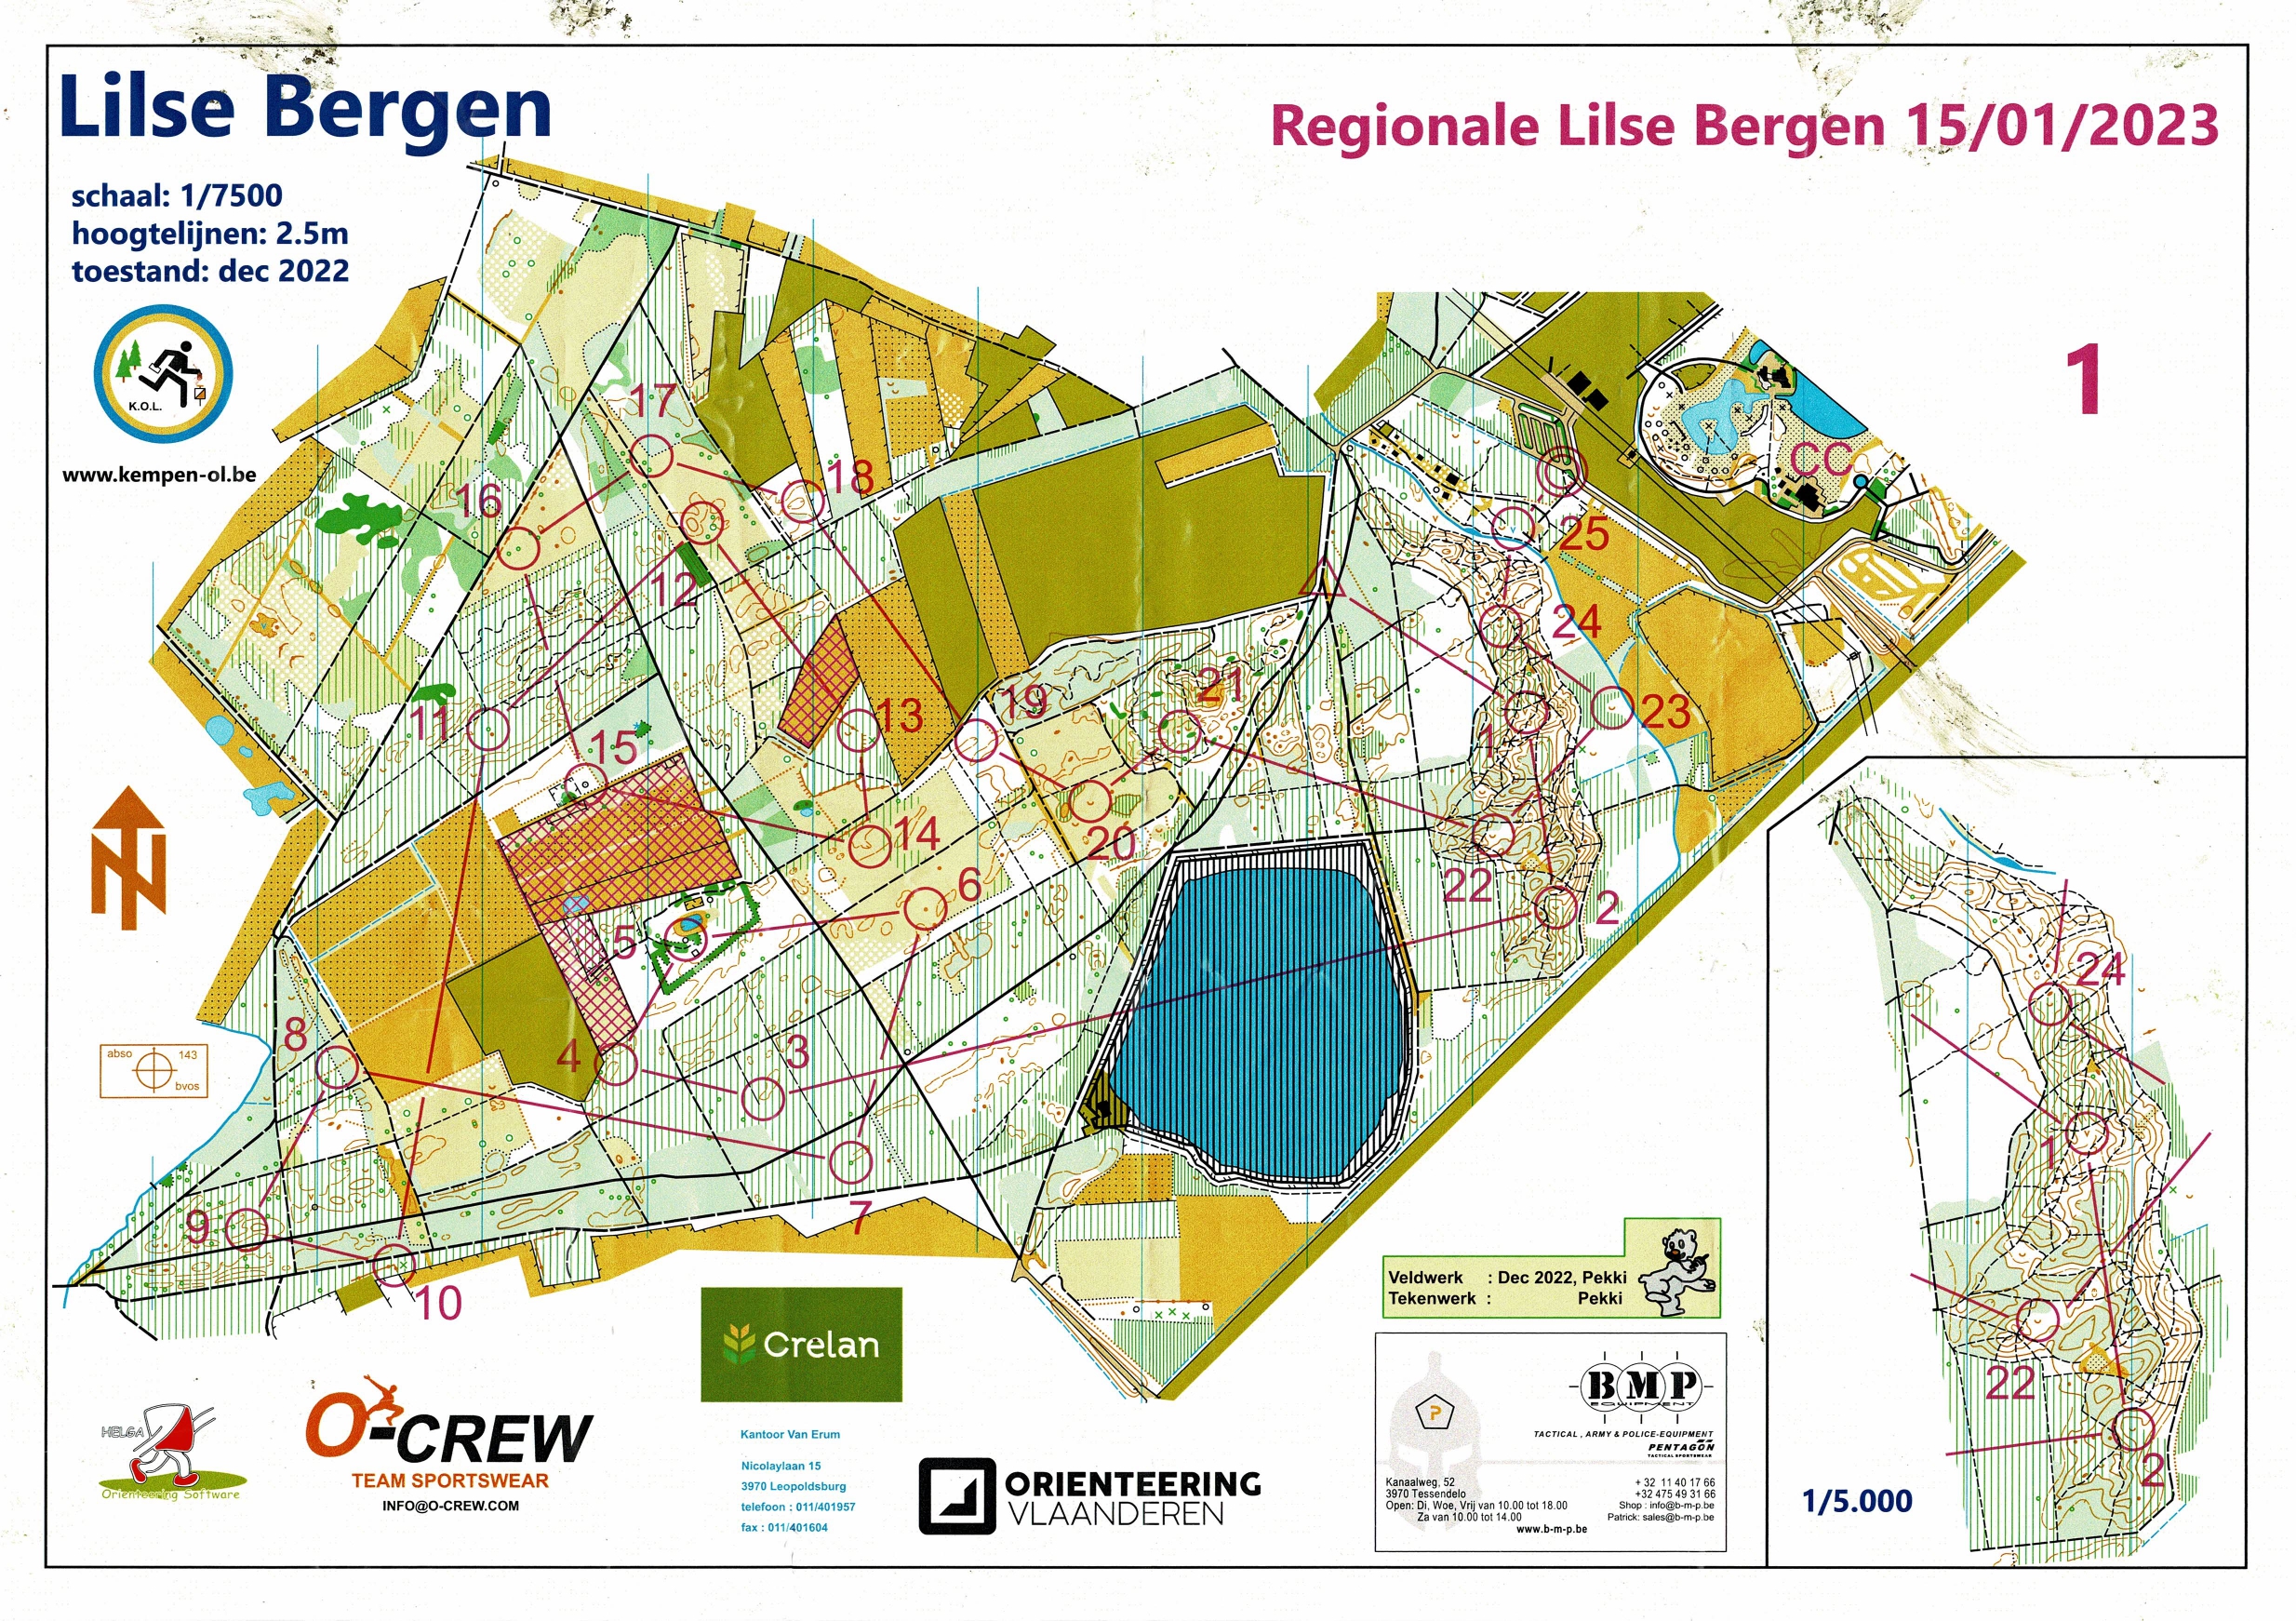 Regionale Lilse Bergen (15/01/2023)